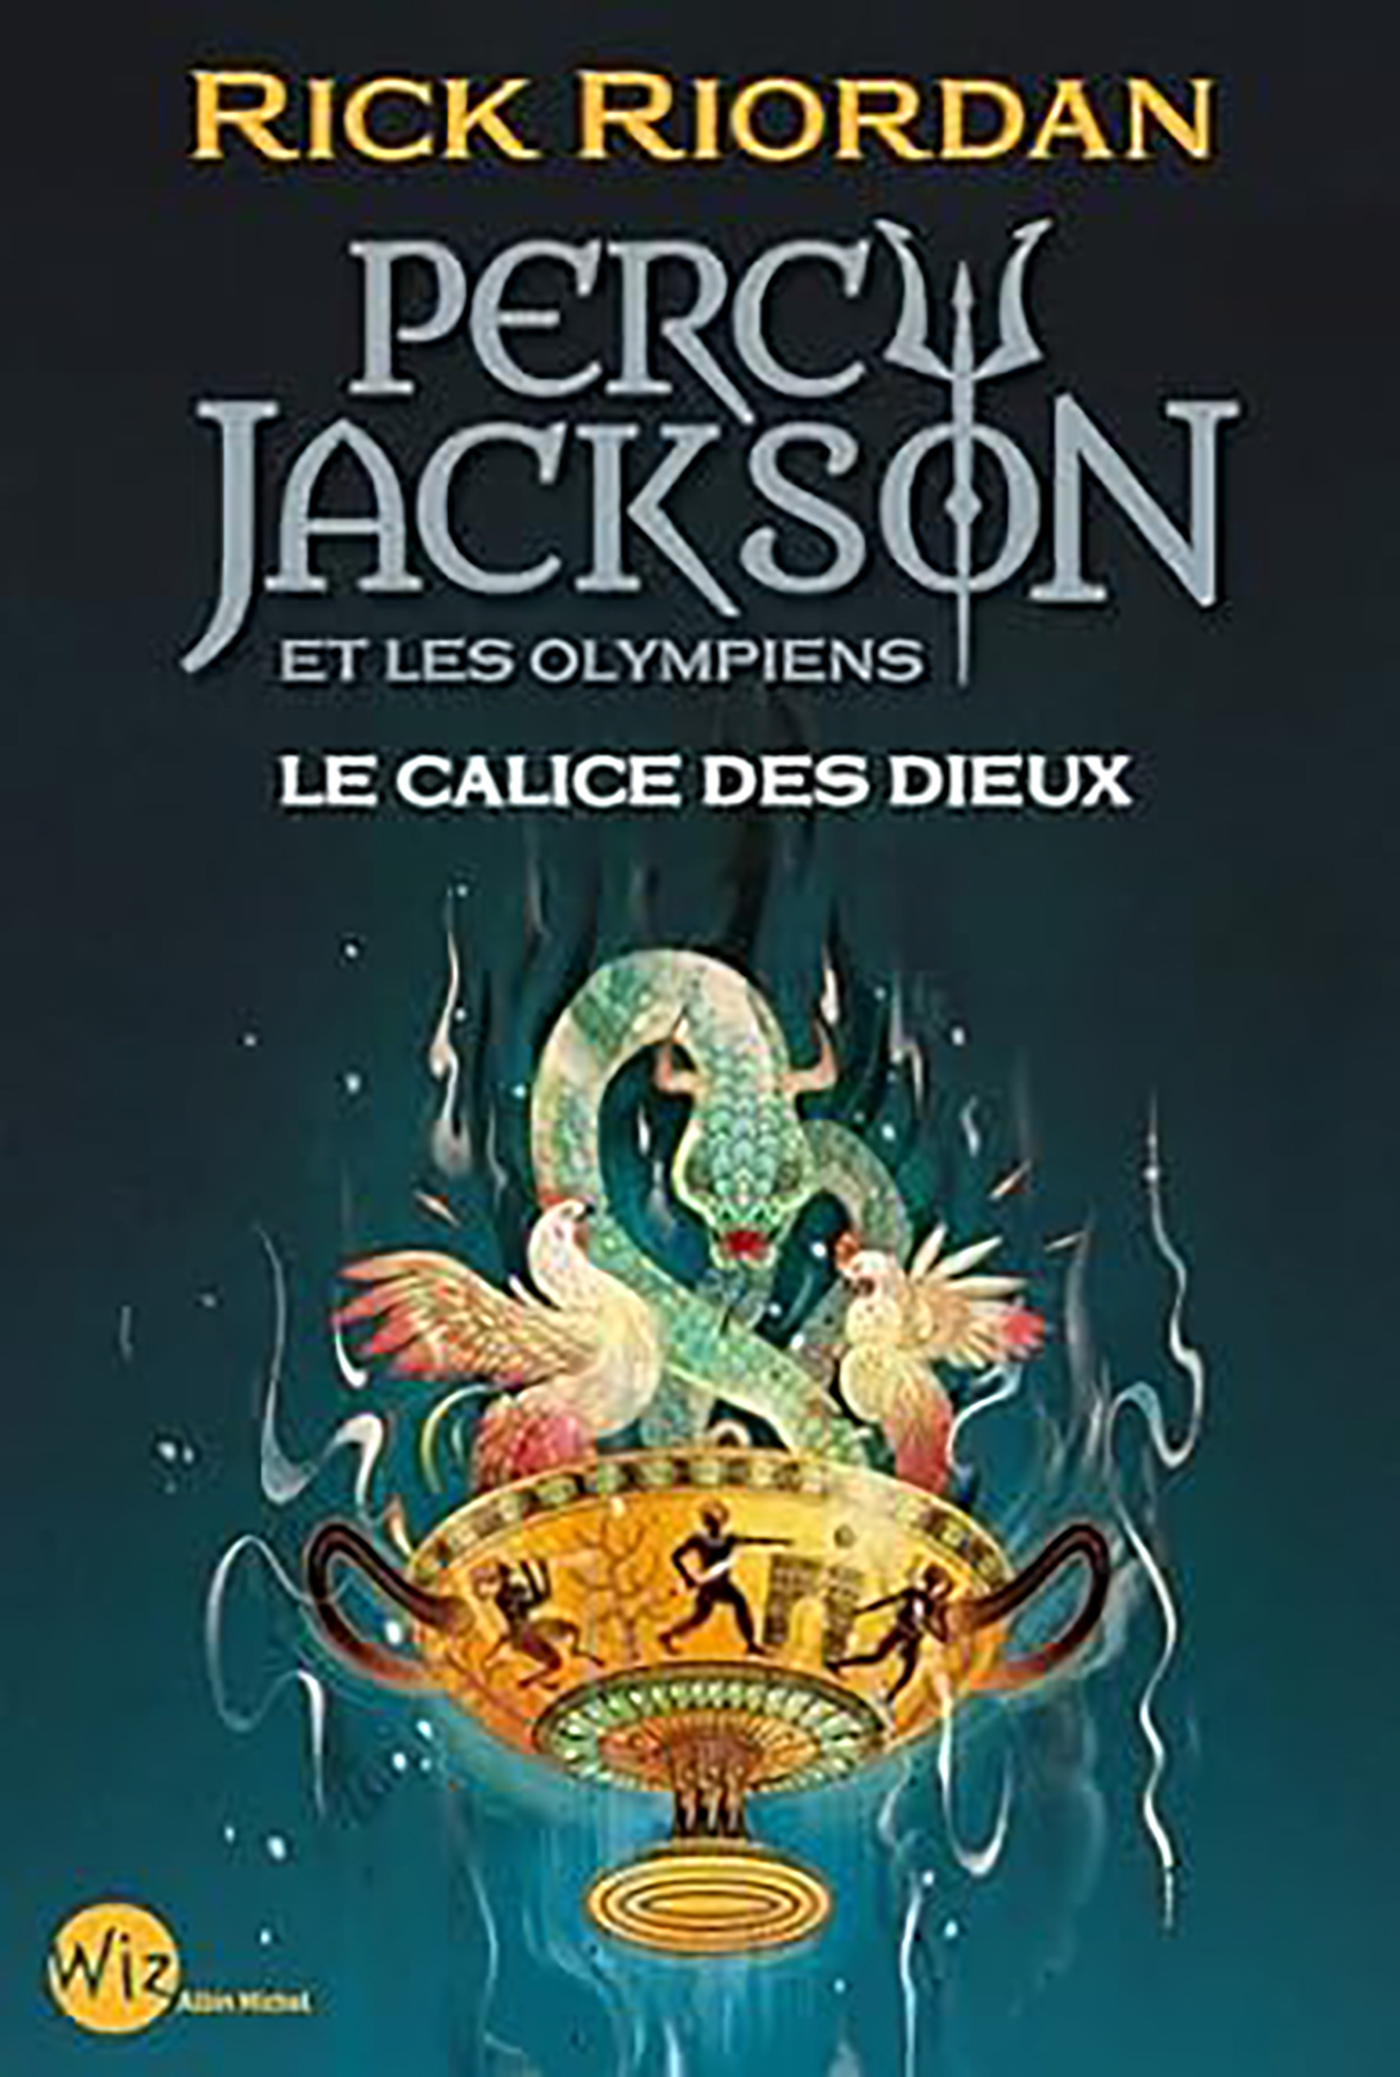 Couverture du livre Percy Jackson et les olympiens - Le Calice des dieux